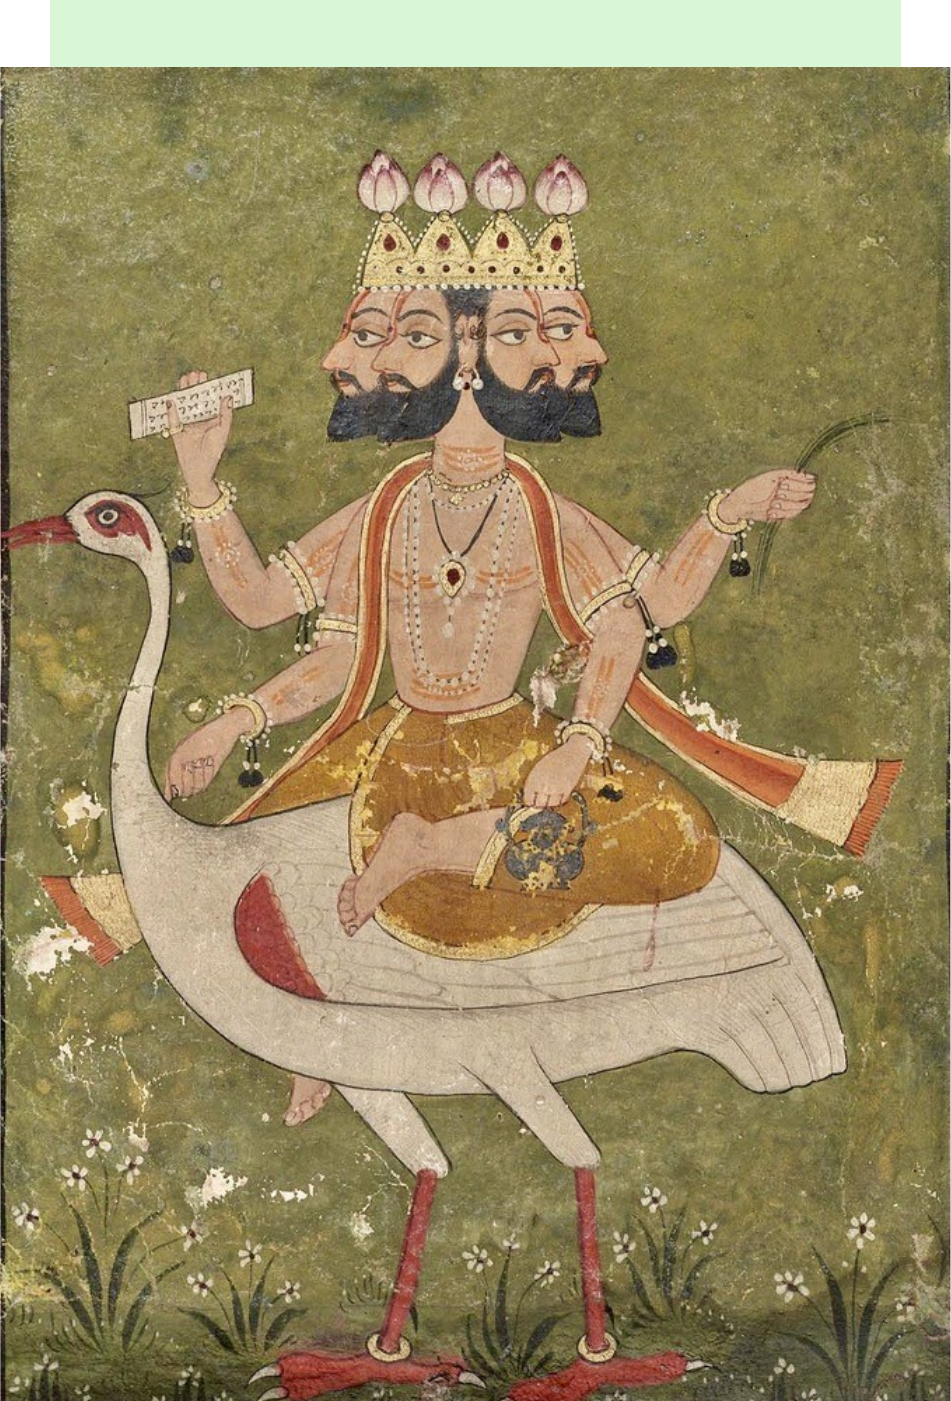 Conectando-se com a divindade: 'Om Klim Krishnaya Namah' - O